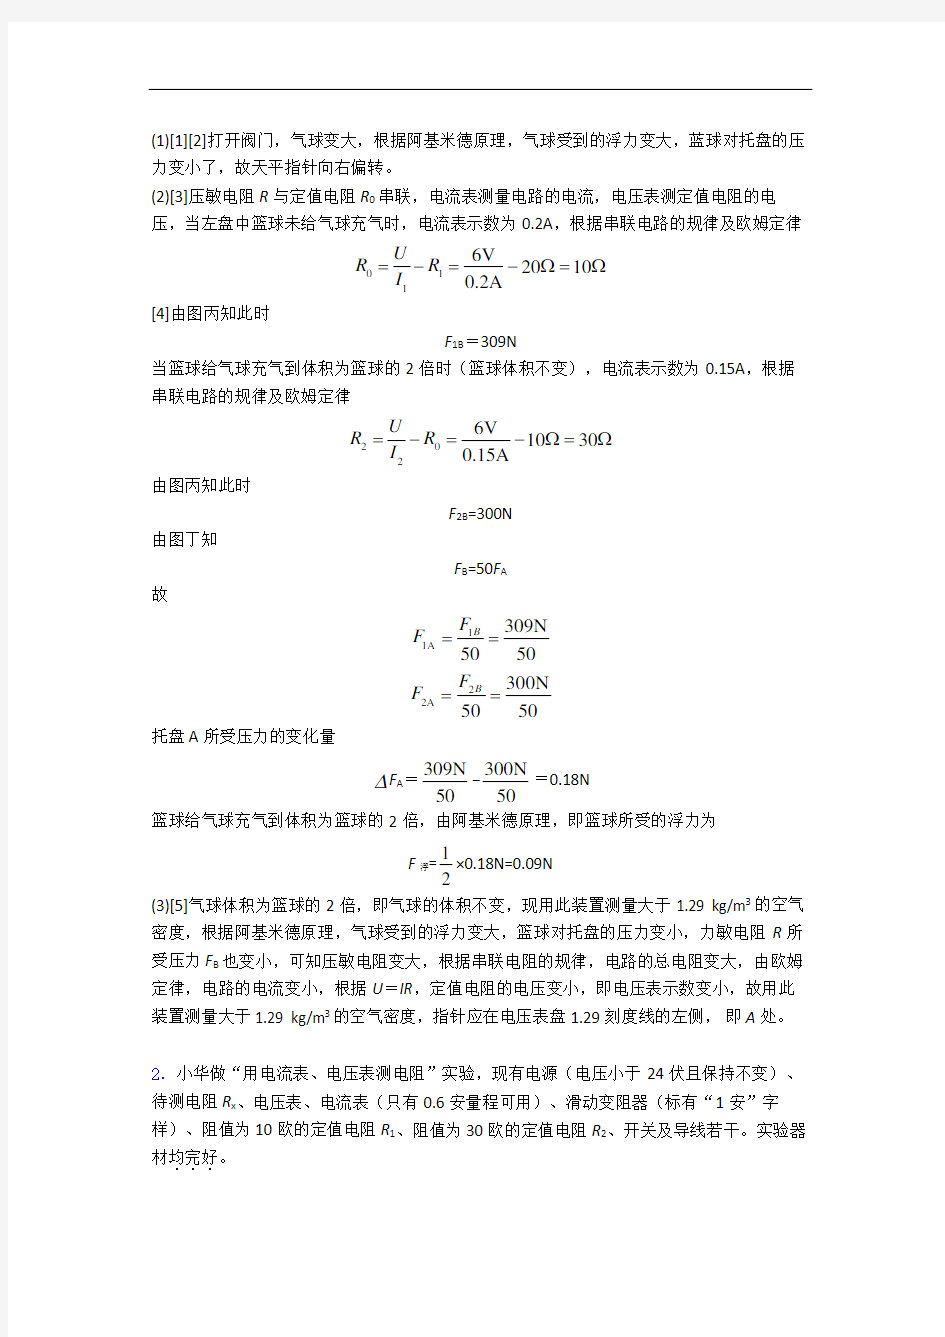 重庆巴蜀中学物理欧姆定律单元测试卷(含答案解析)